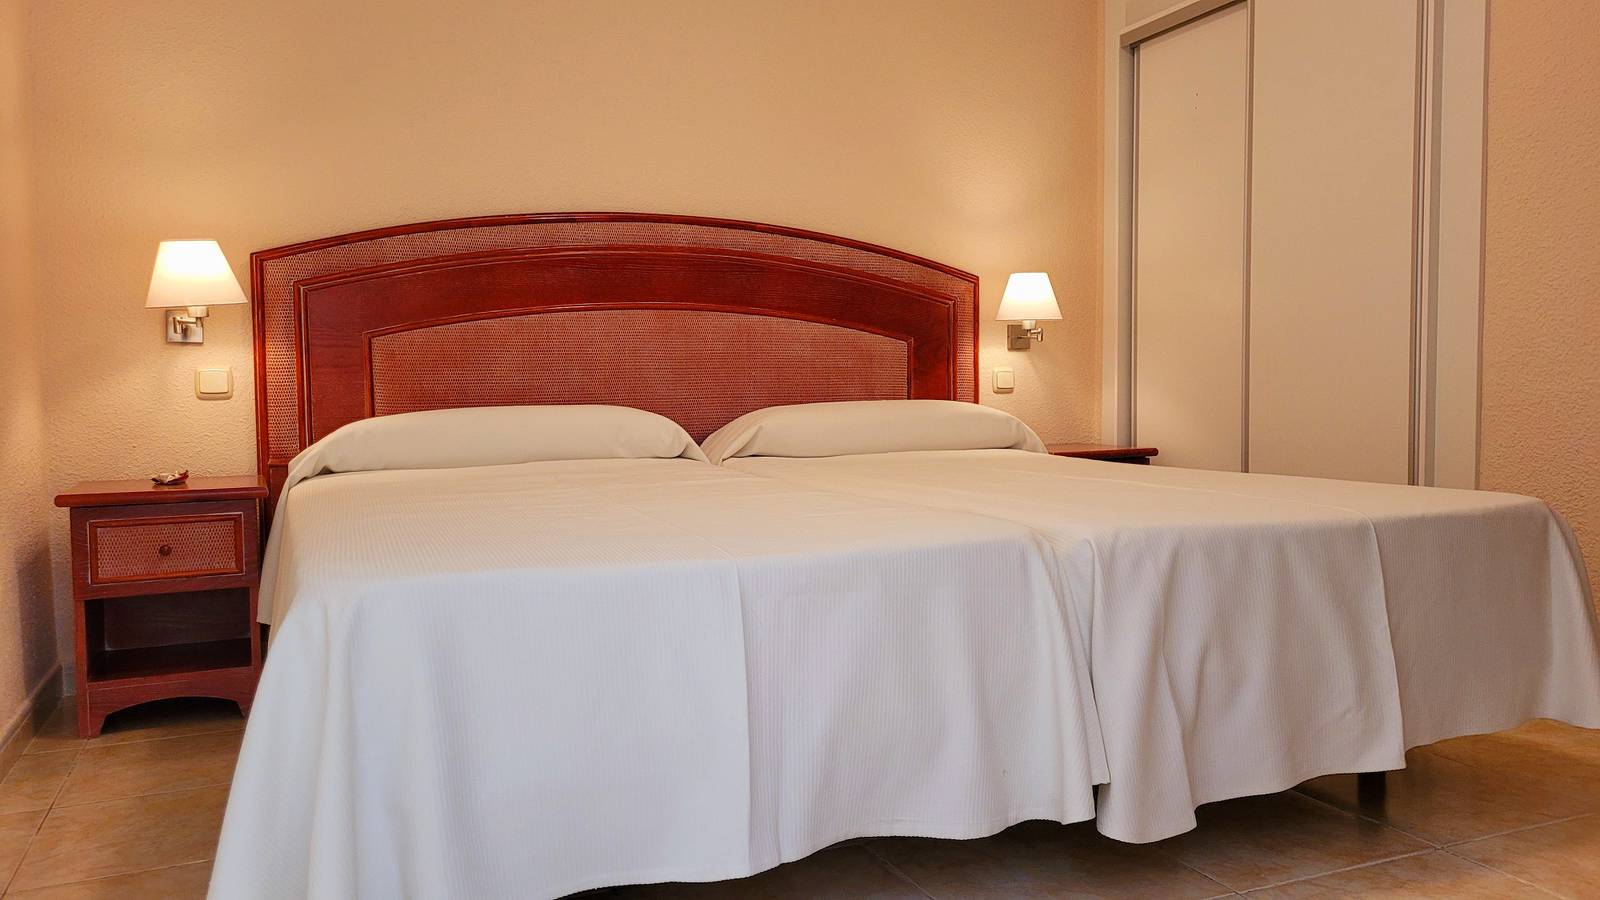 2 bedroom  economic apartments - no views  HOVIMA Santa María Costa Adeje